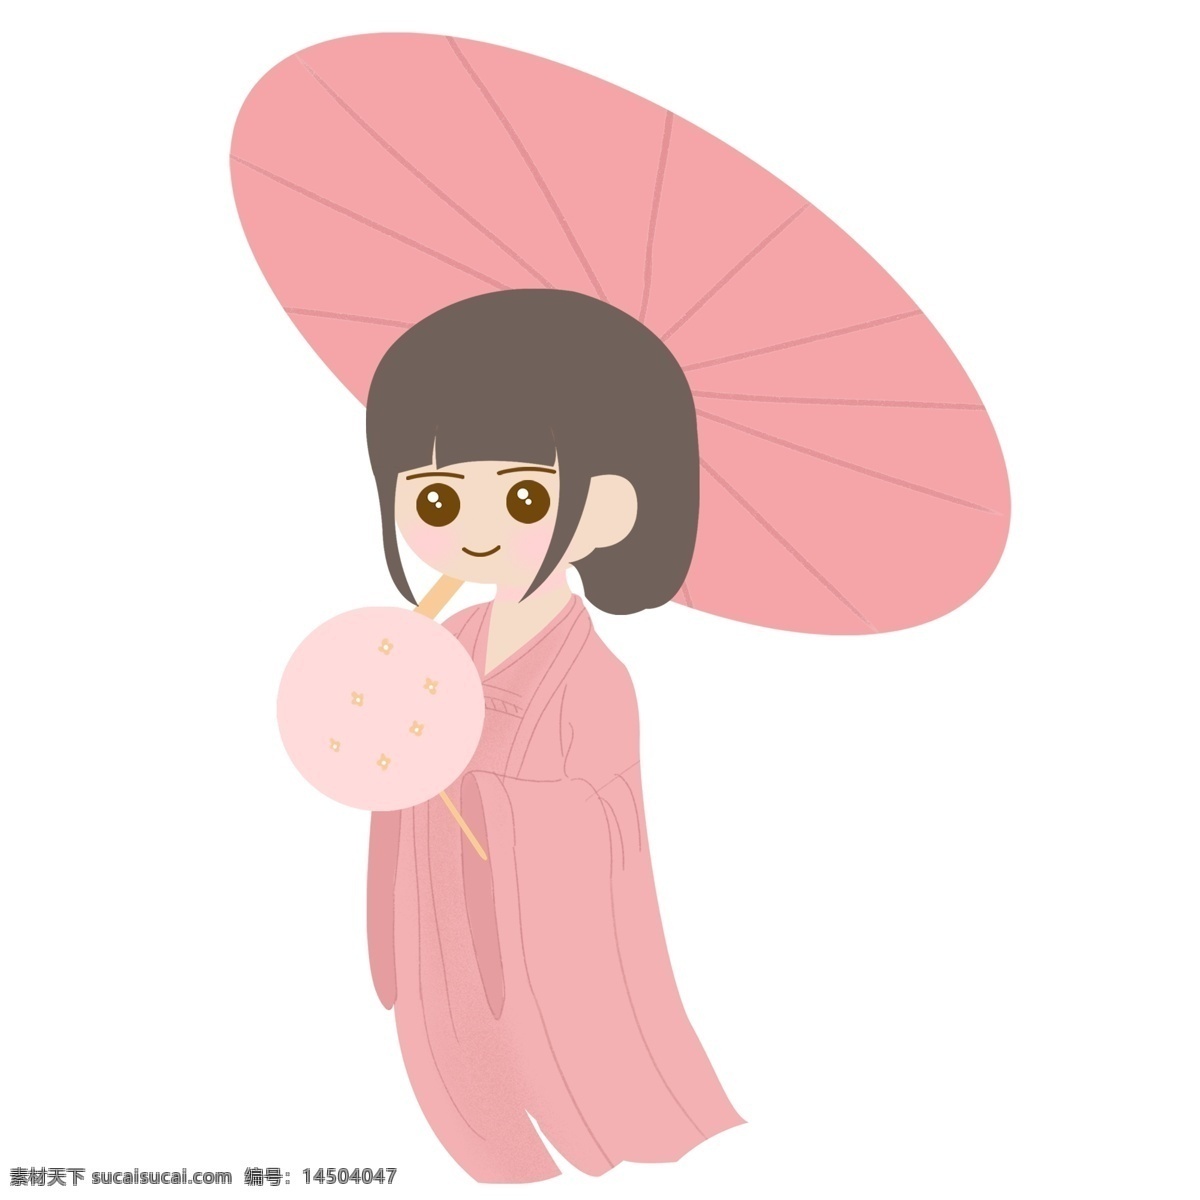 撑伞 粉色 少女 装饰 元素 雨伞 装饰元素 手绘 少女心 粉嫩 短发 蒲扇